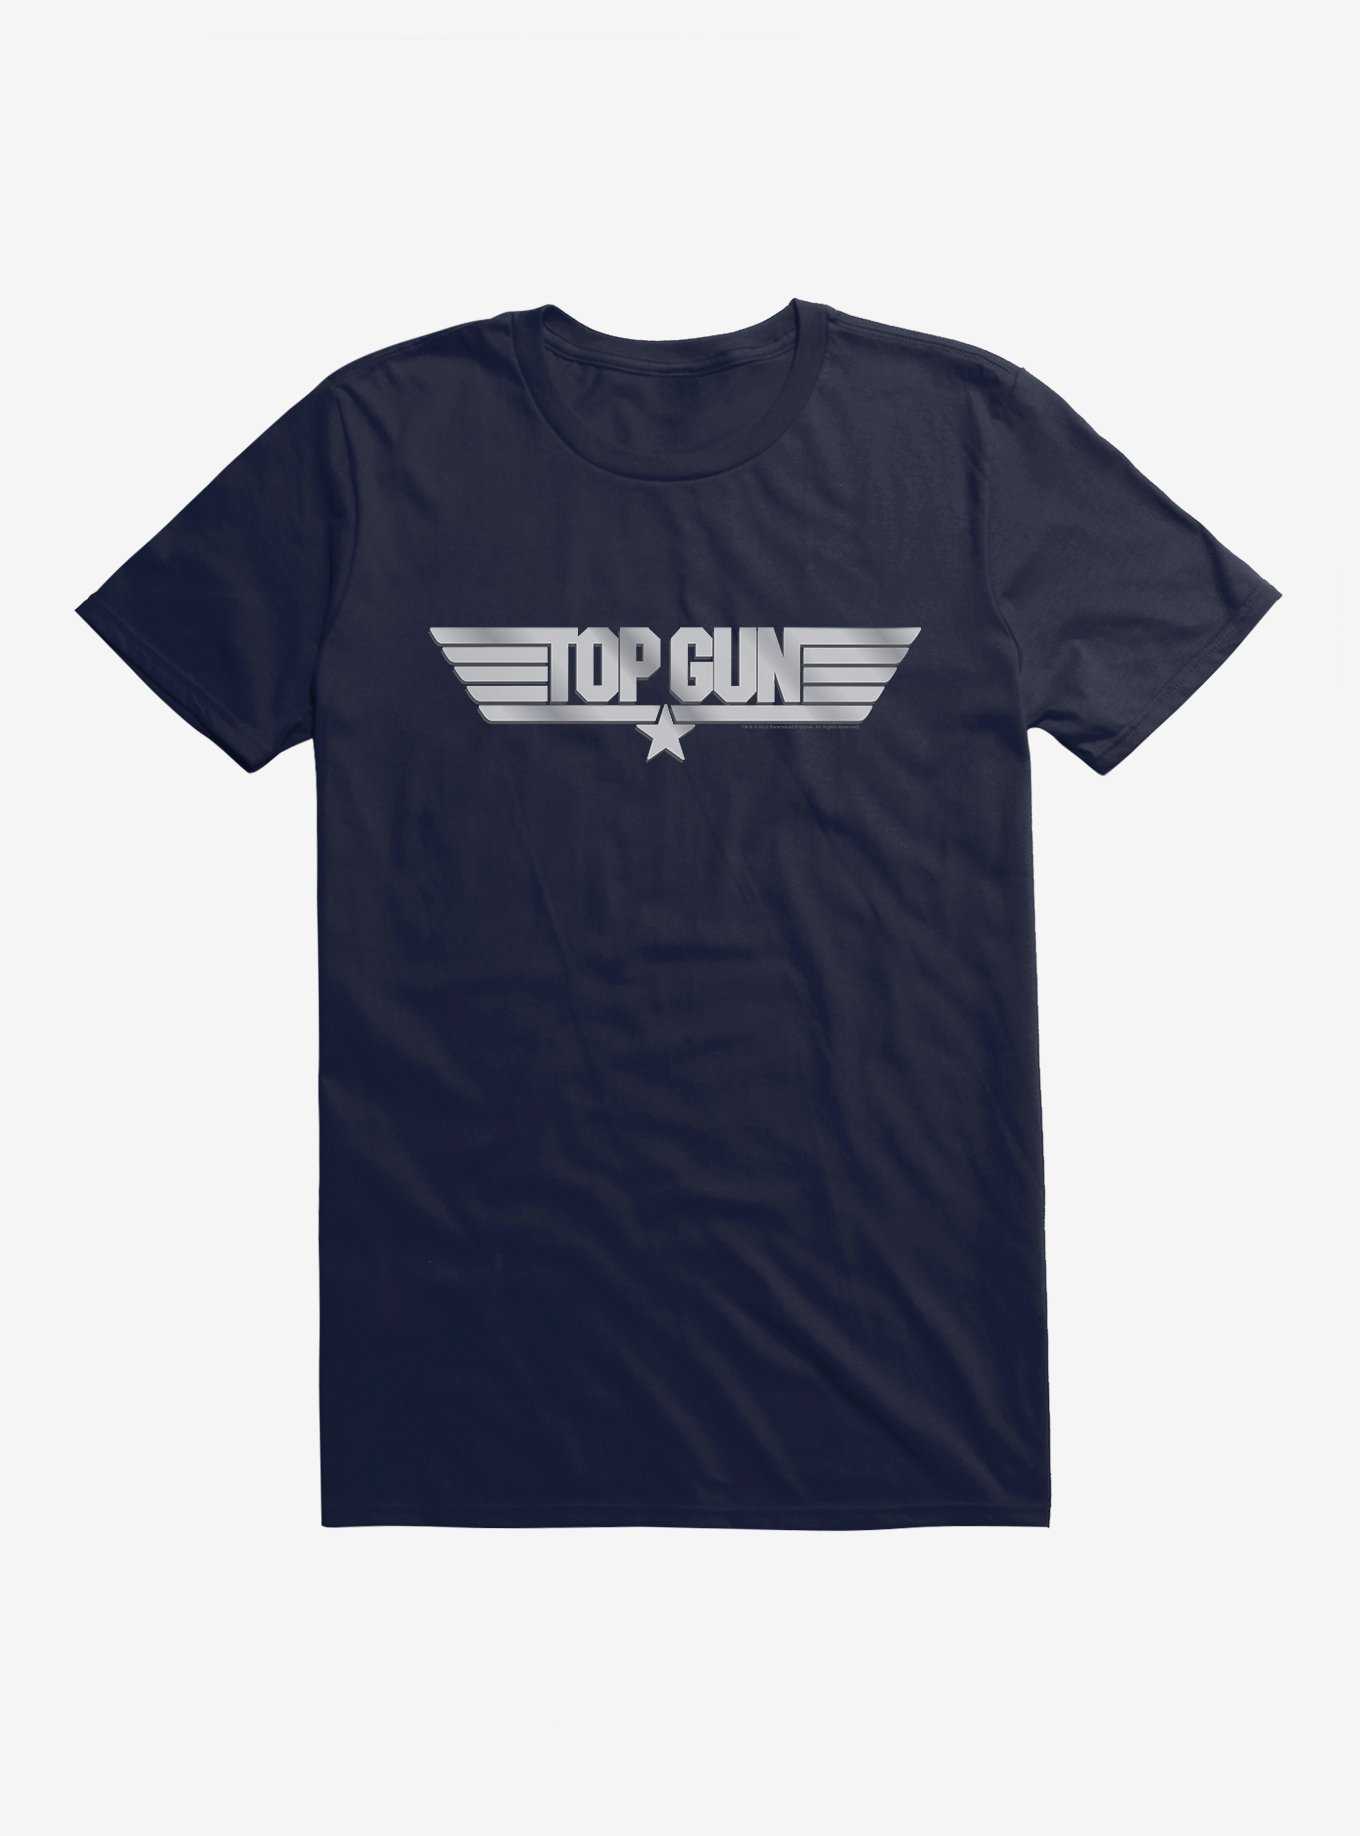 OFFICIAL Top Gun Merchandise & Shirts | Hot Topic